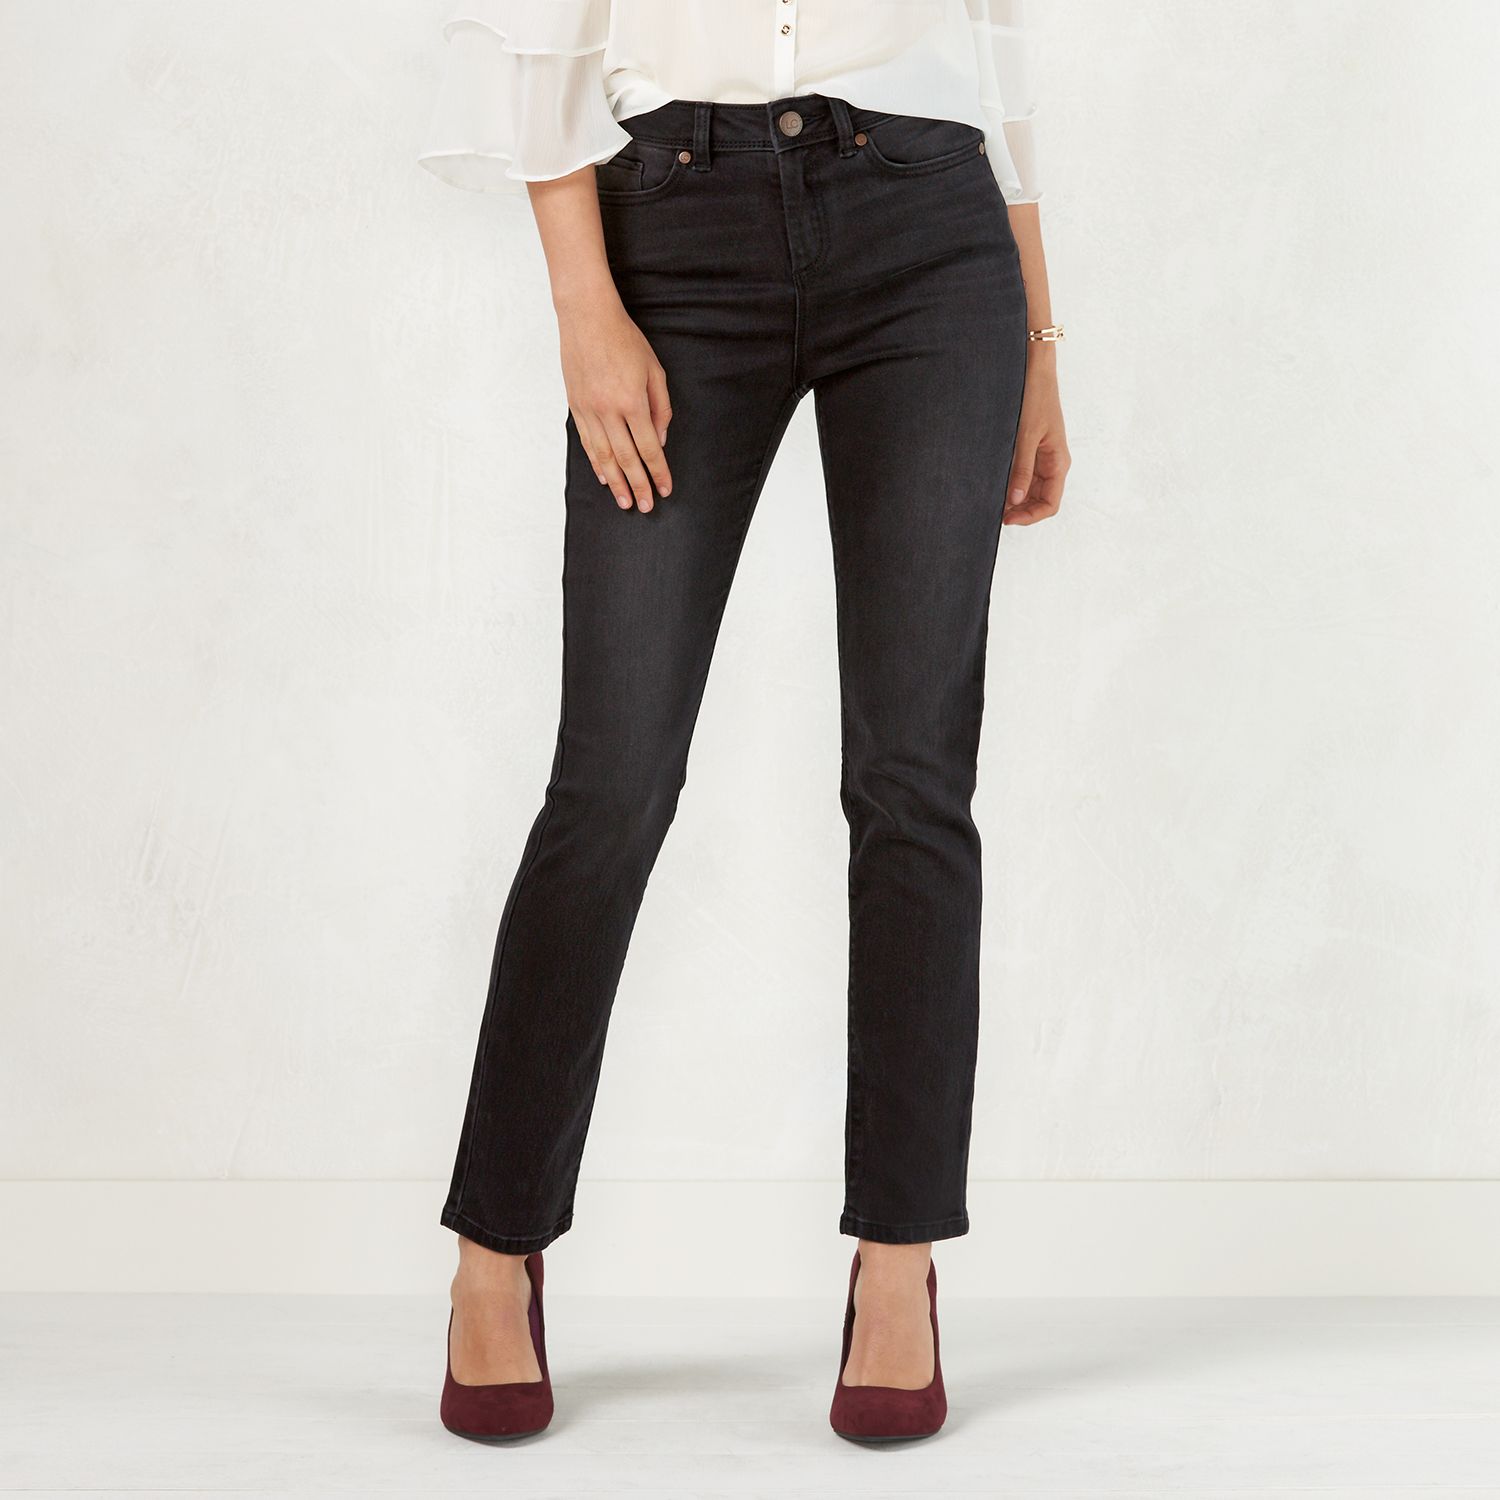 lauren conrad black jeans